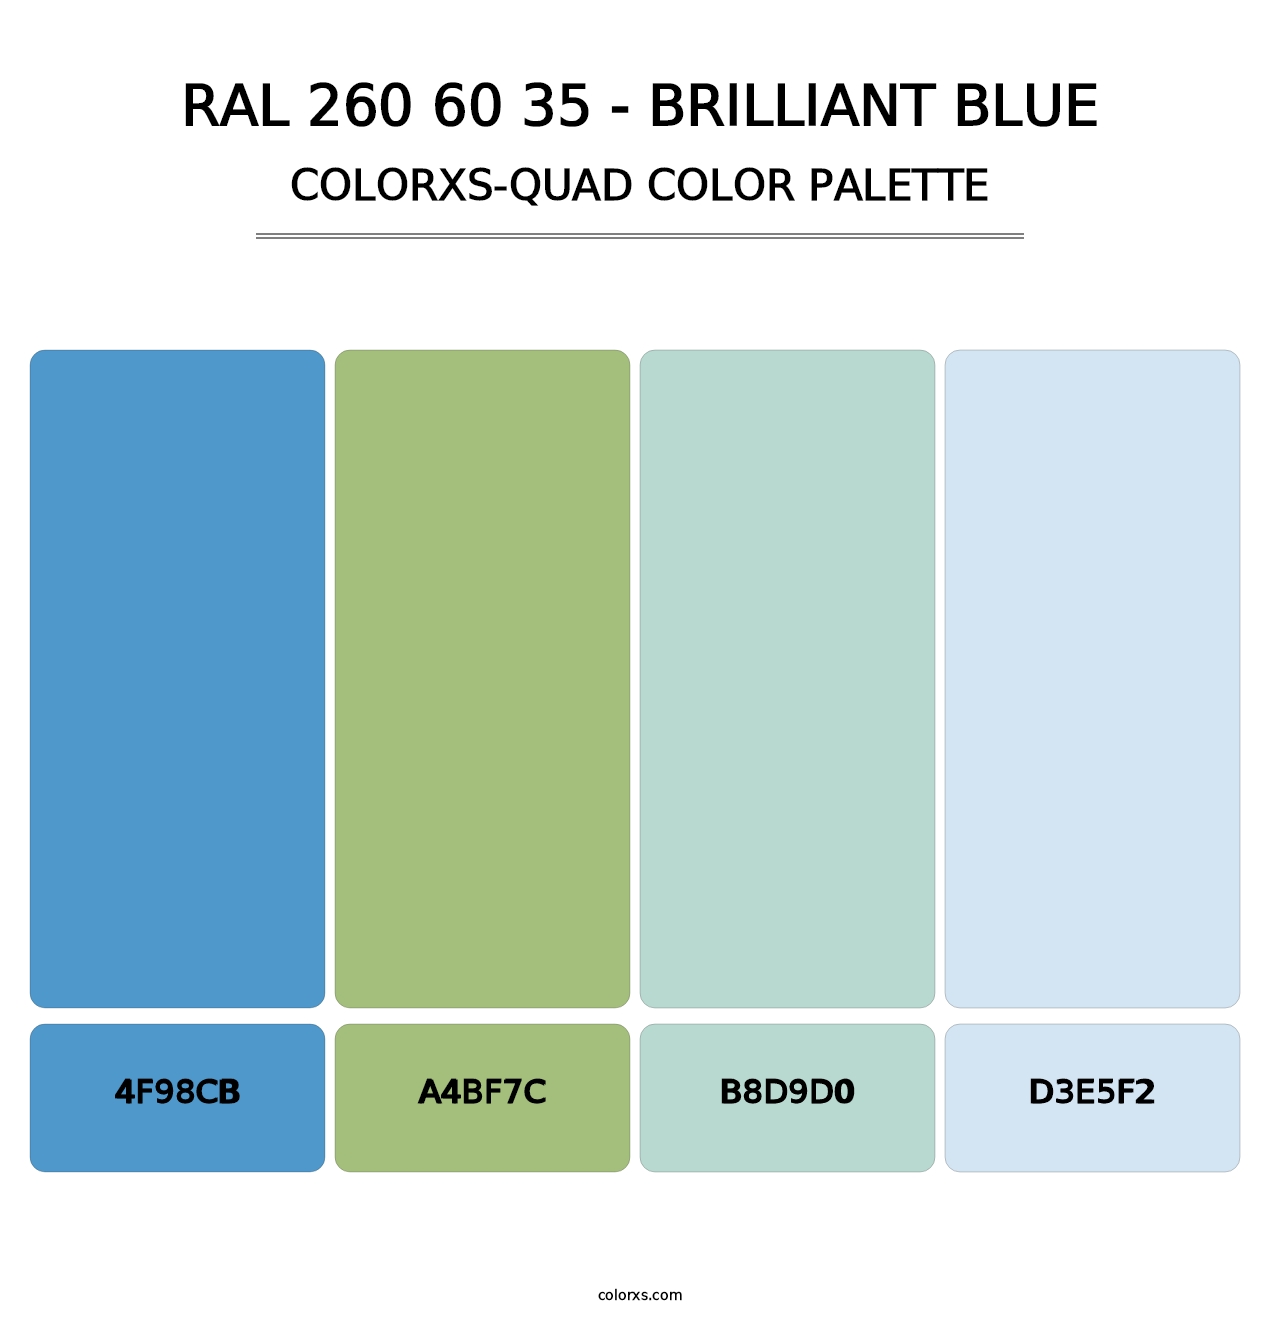 RAL 260 60 35 - Brilliant Blue - Colorxs Quad Palette